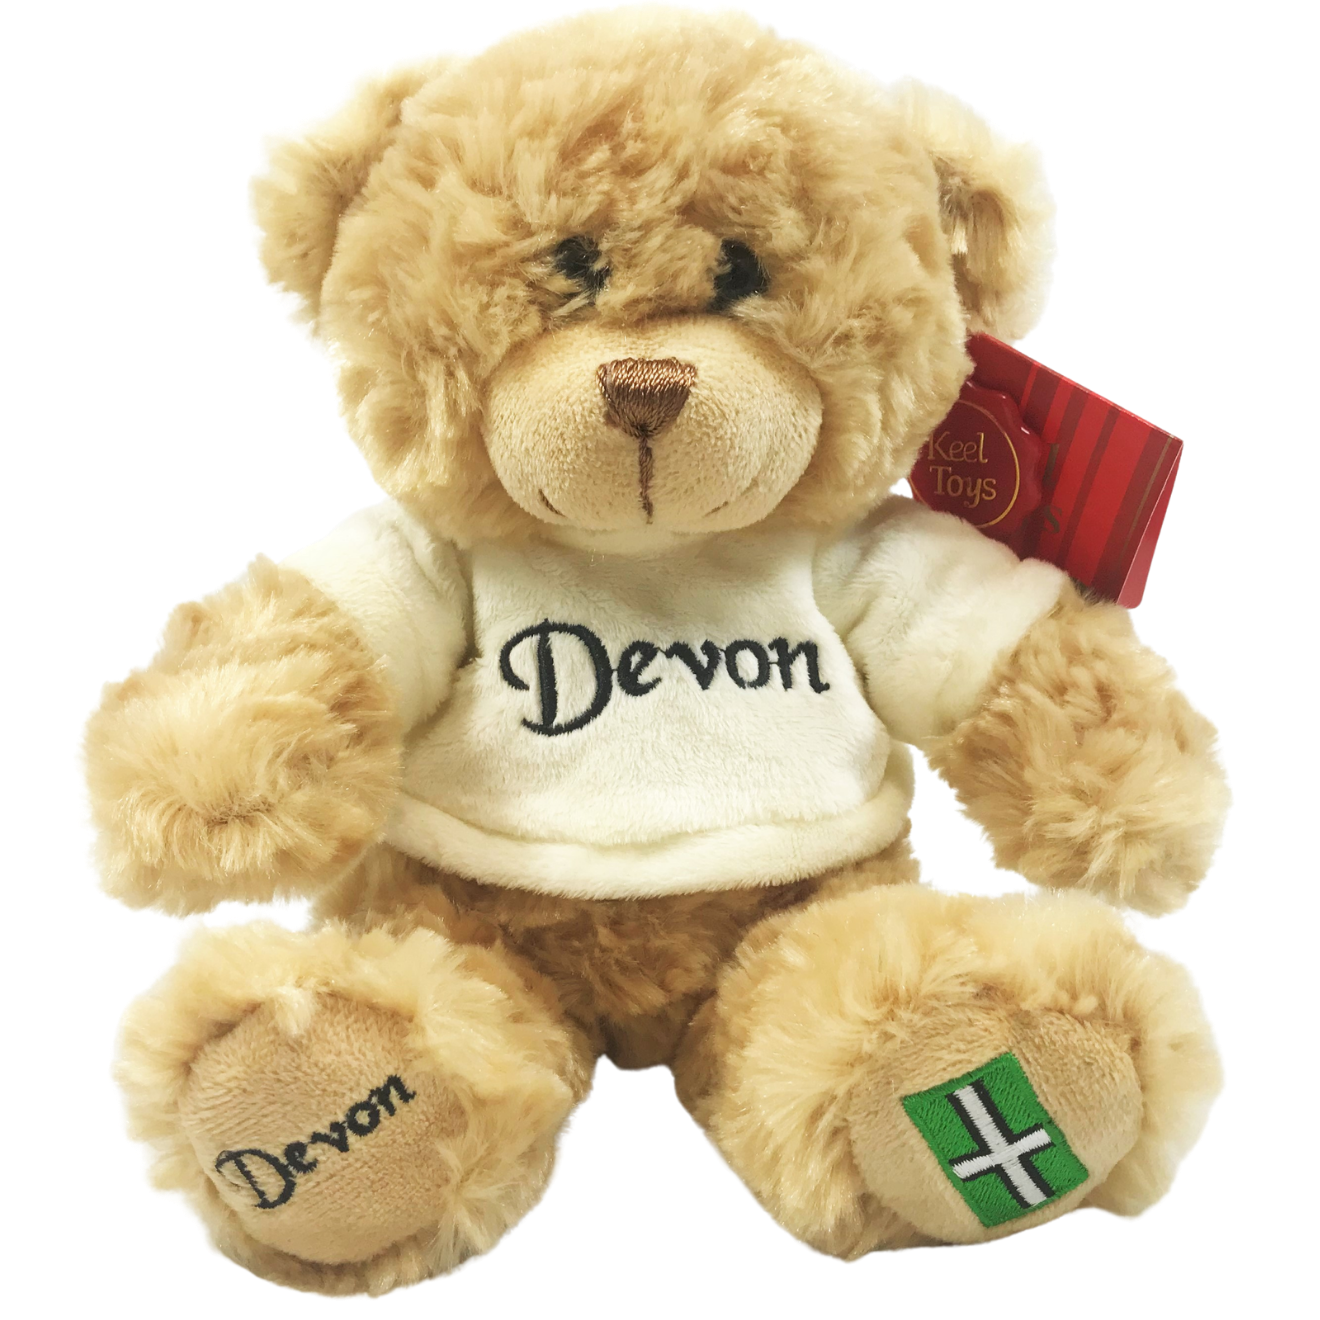 18cm Devon Teddy Bear